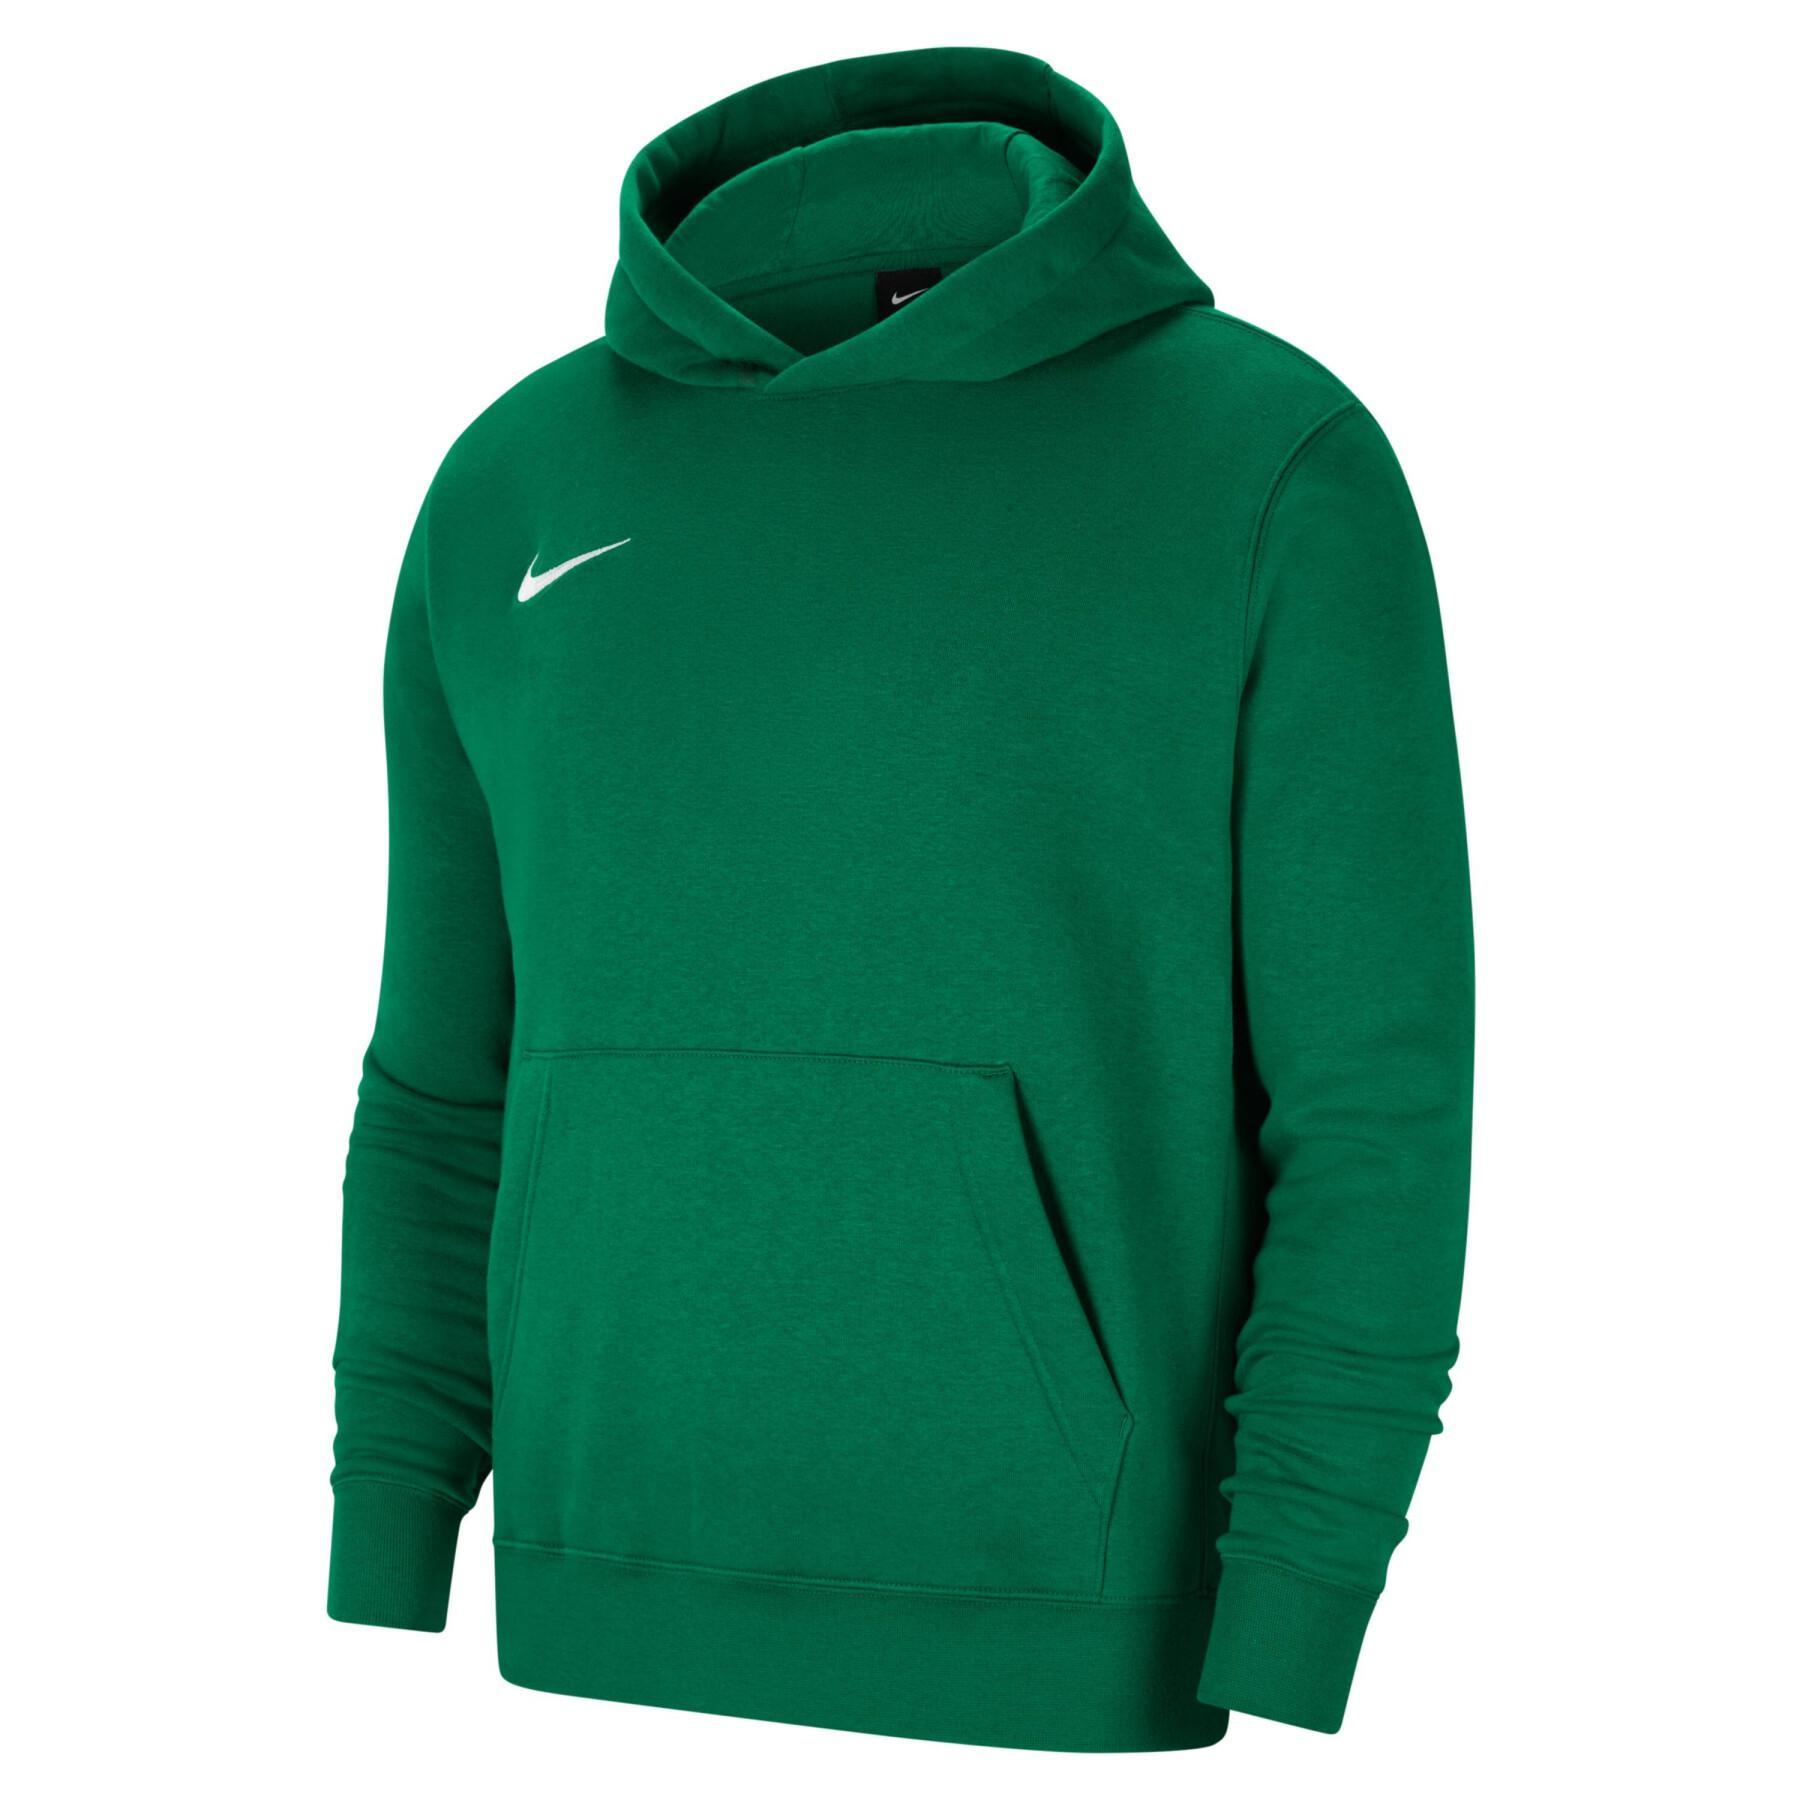 Kinder hoodie Nike Fleece Park20